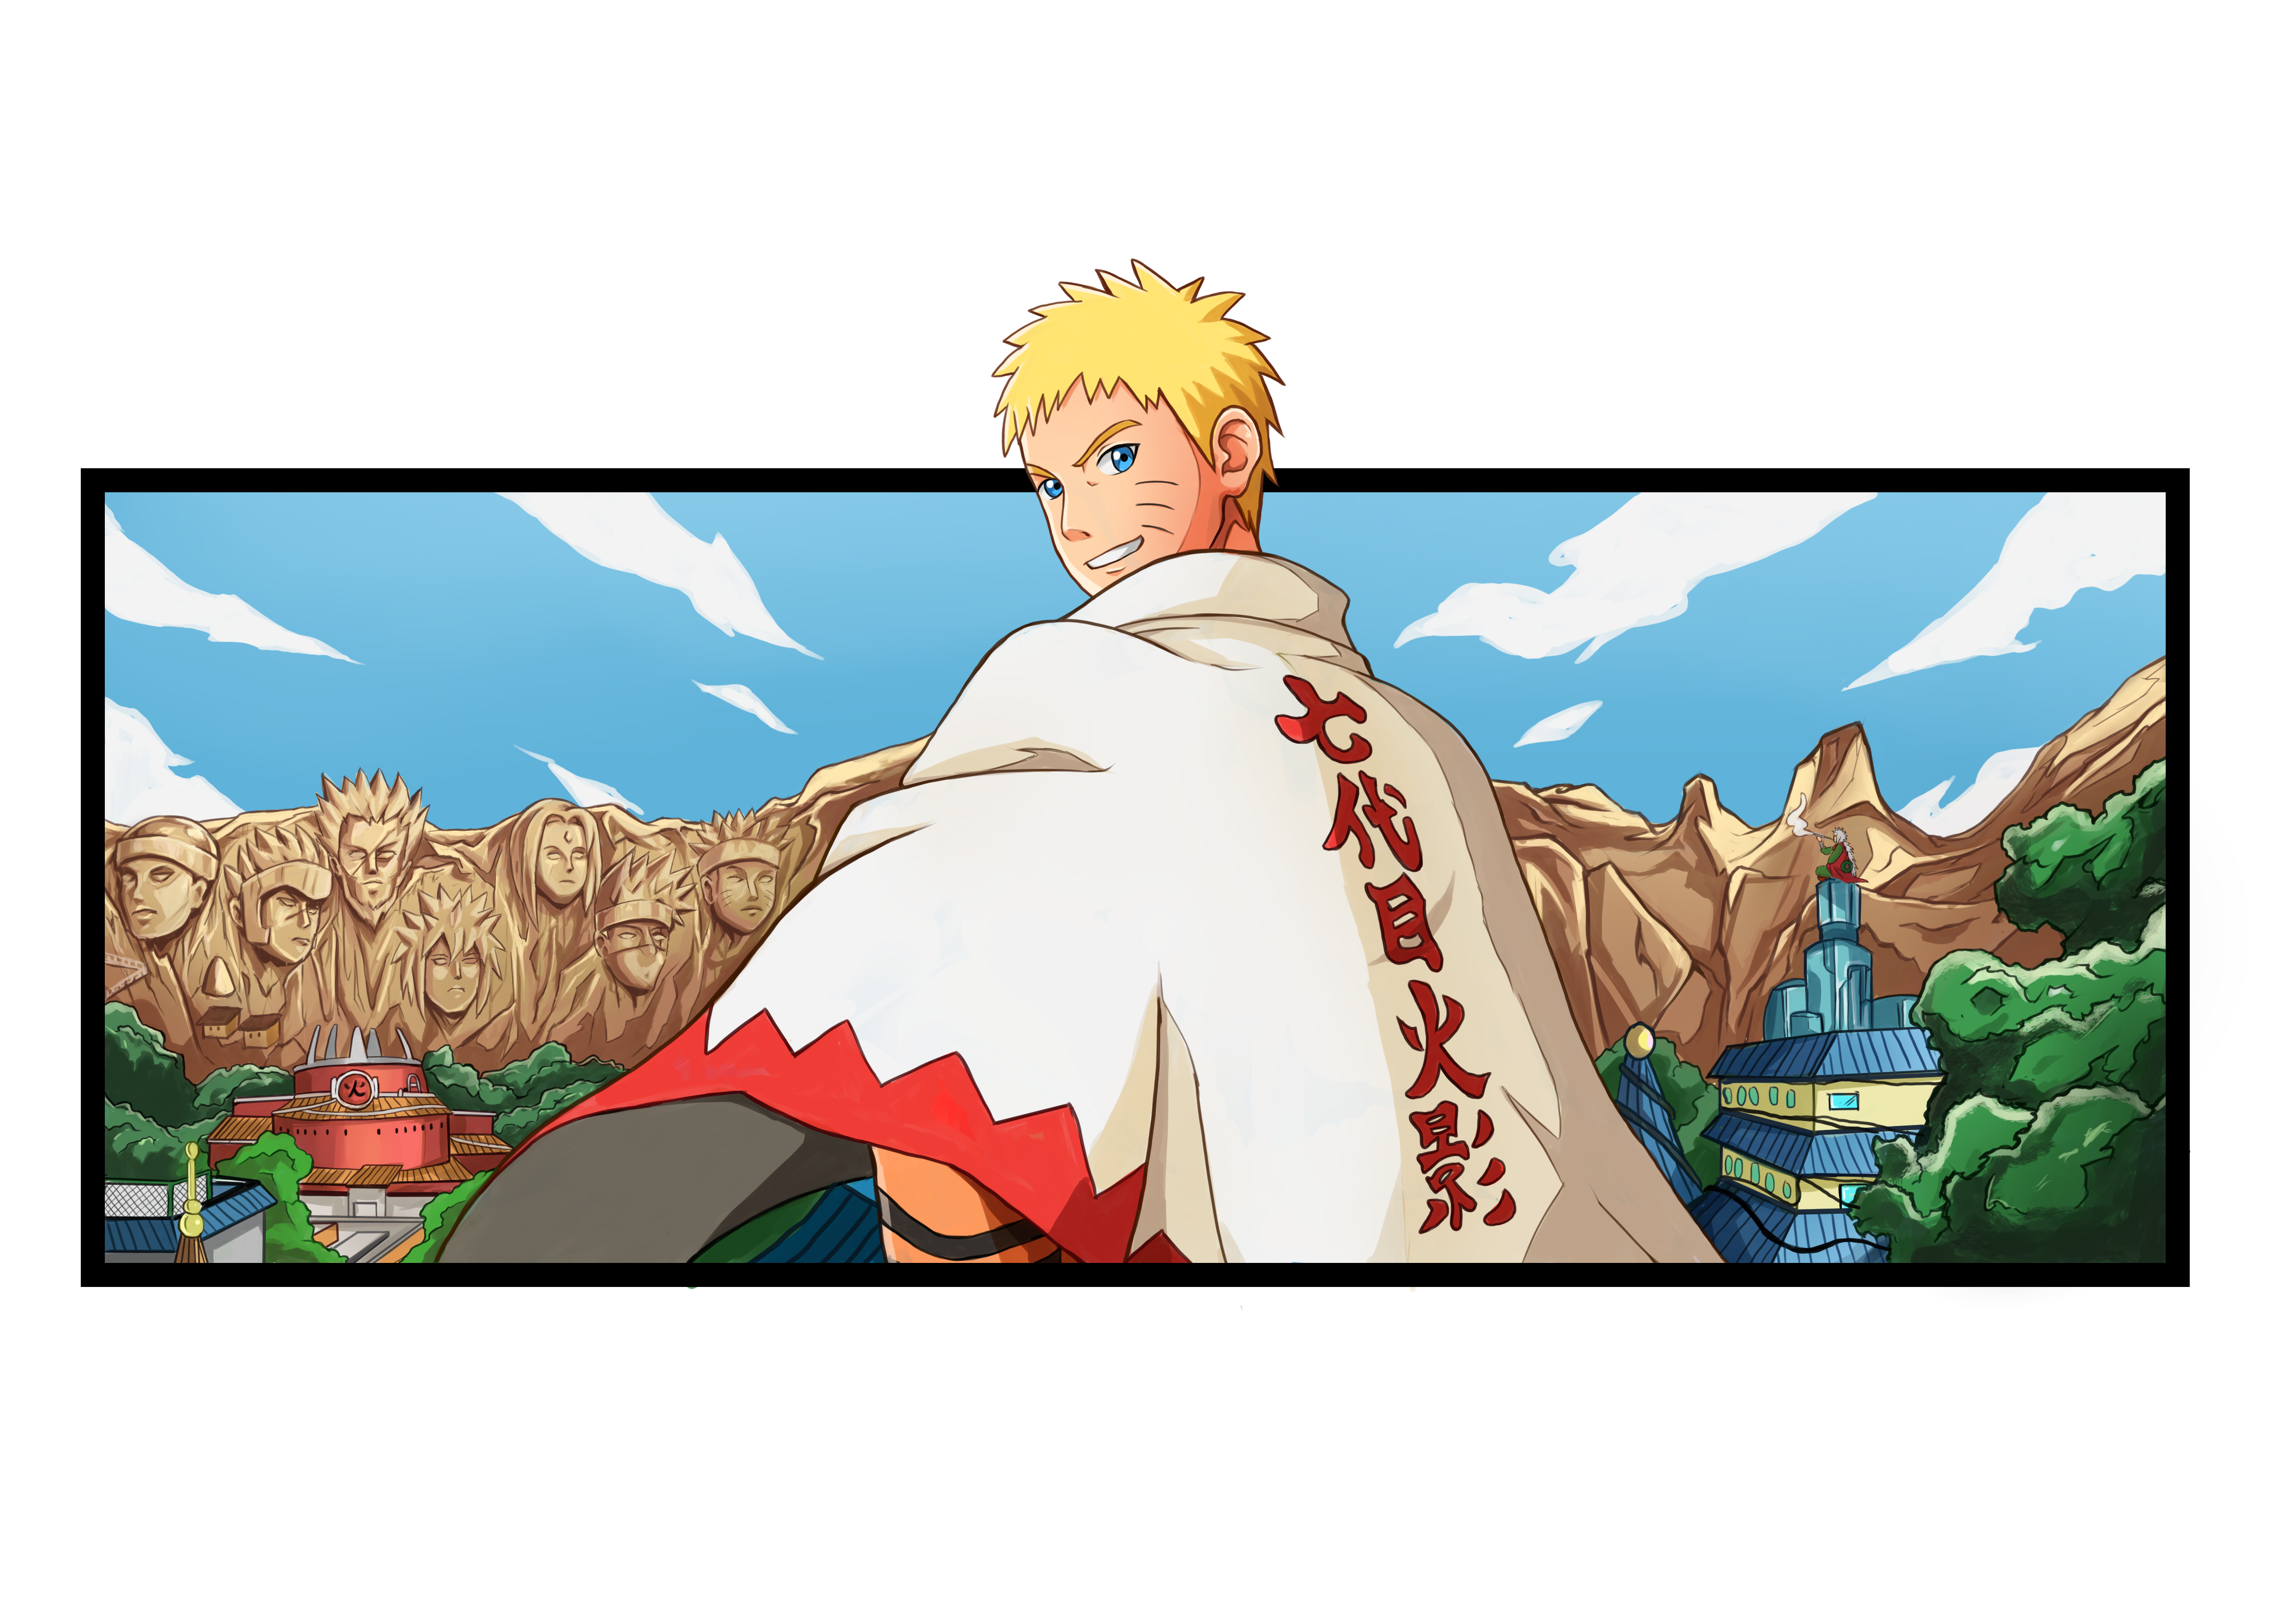 Anime Style Logo Desgin für deine Klamotten, Narutos größter Traum ist es, von allen Bewohnern seines Dorfes anerkannt und respektiert zu werden und Hokage zu werden[14]. Dies gelingt ihm schlussendlich und er tritt Kakashis Nachfolge als Nanadaime Hokage an. Nachdem er nach mehreren Fehlversuchen die Abschlussprüfung der Ninja-Akademie bestanden hat, wird er Schüler des Jonins Kakashi